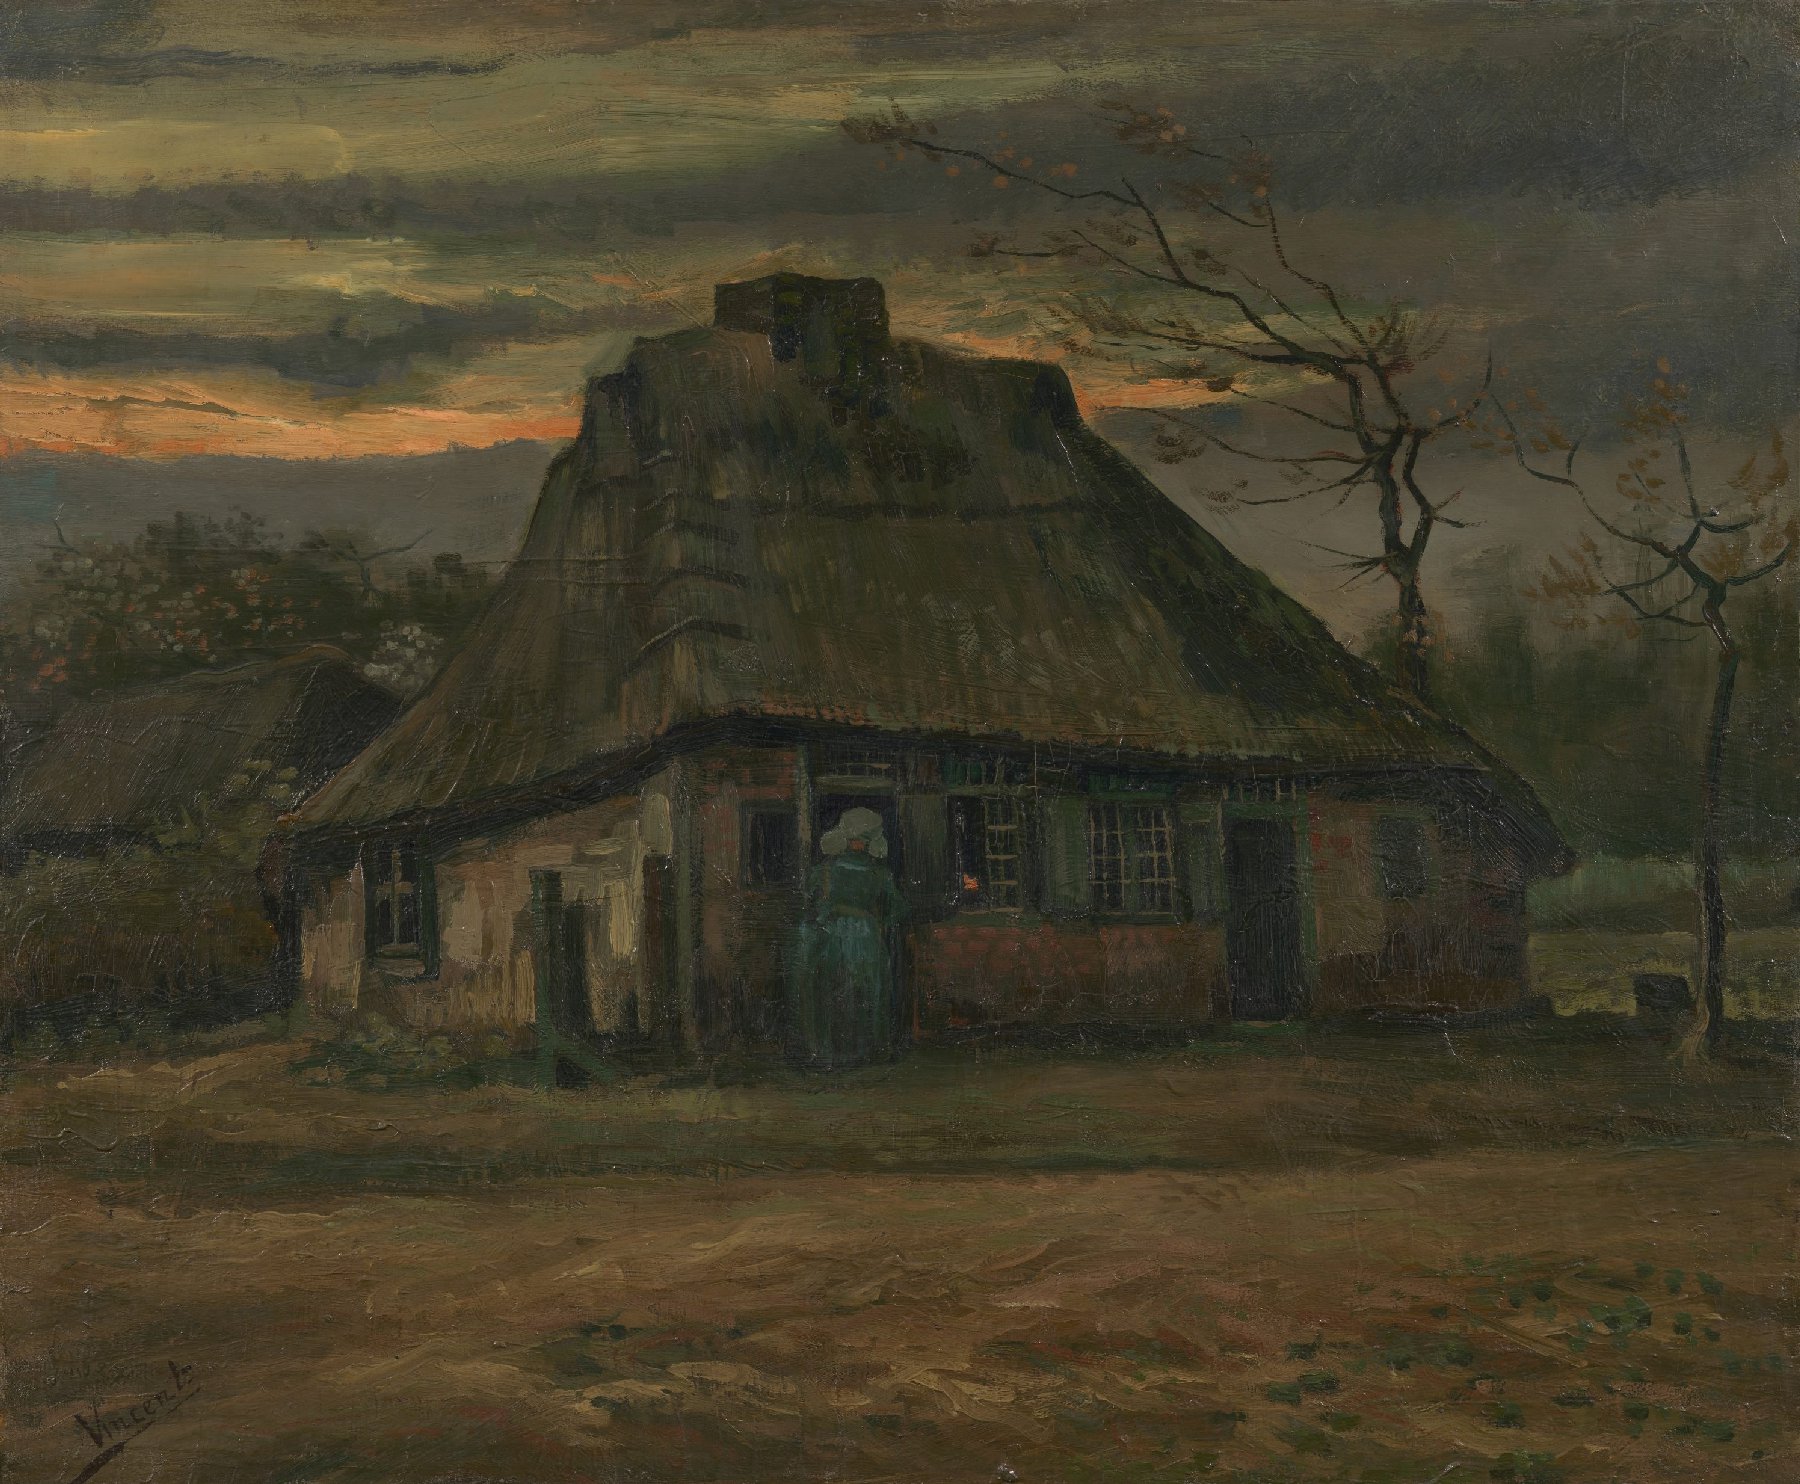 De hut Vincent van Gogh (1853 - 1890), Nuenen, mei 1885